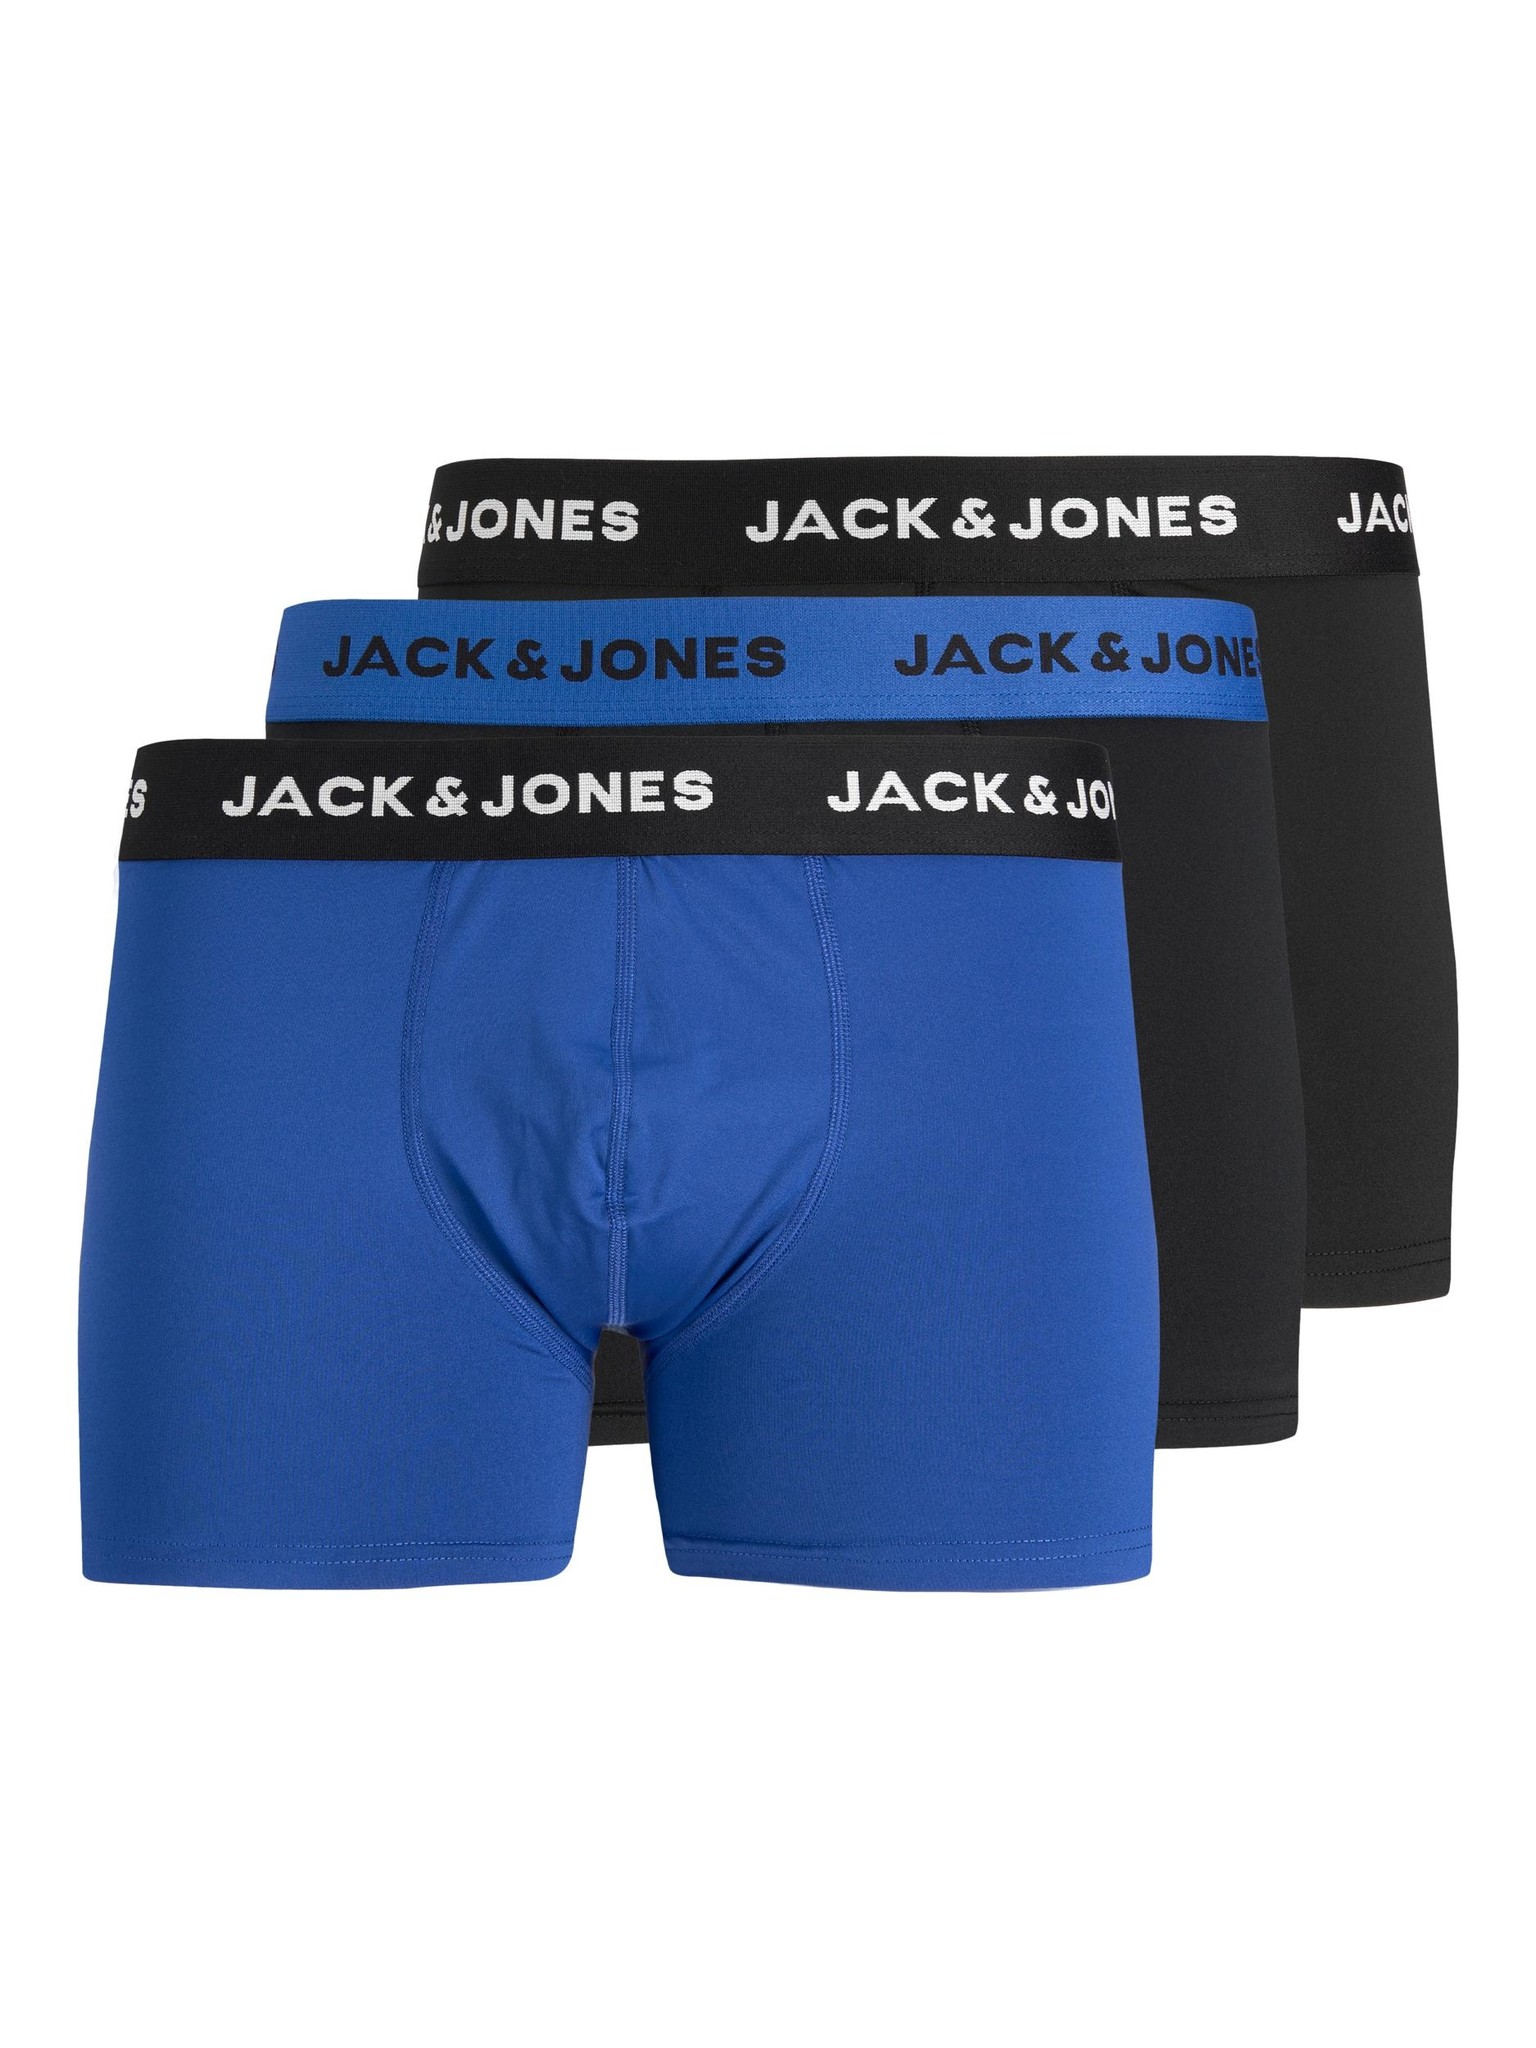 Lacoste Boxer Shorts Men Microfiber Blue 3-Pack